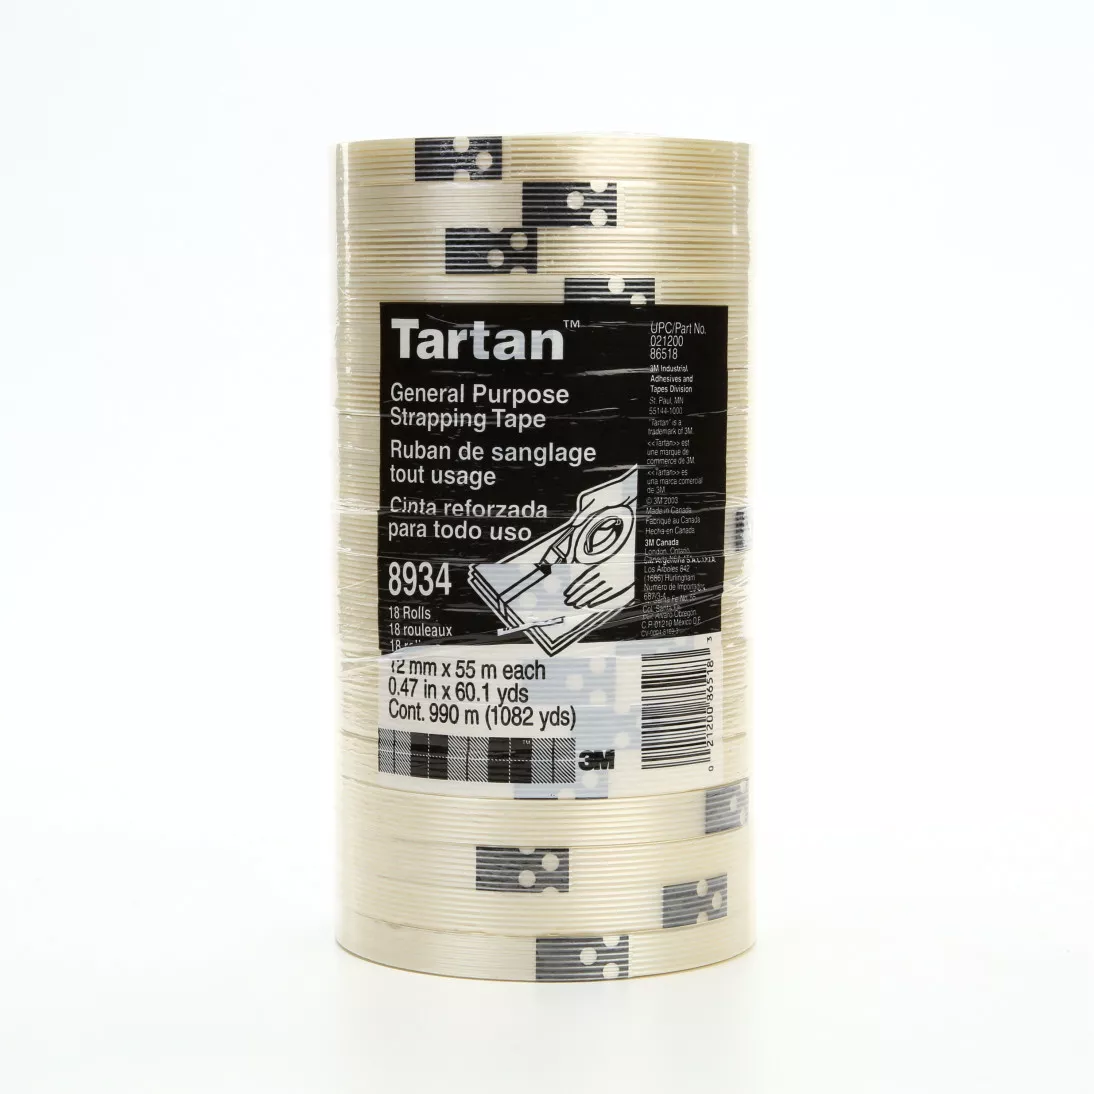 Tartan™ Filament Tape 8934, Clear, 12 mm x 55 m, 4 mil, 72 rolls per
case